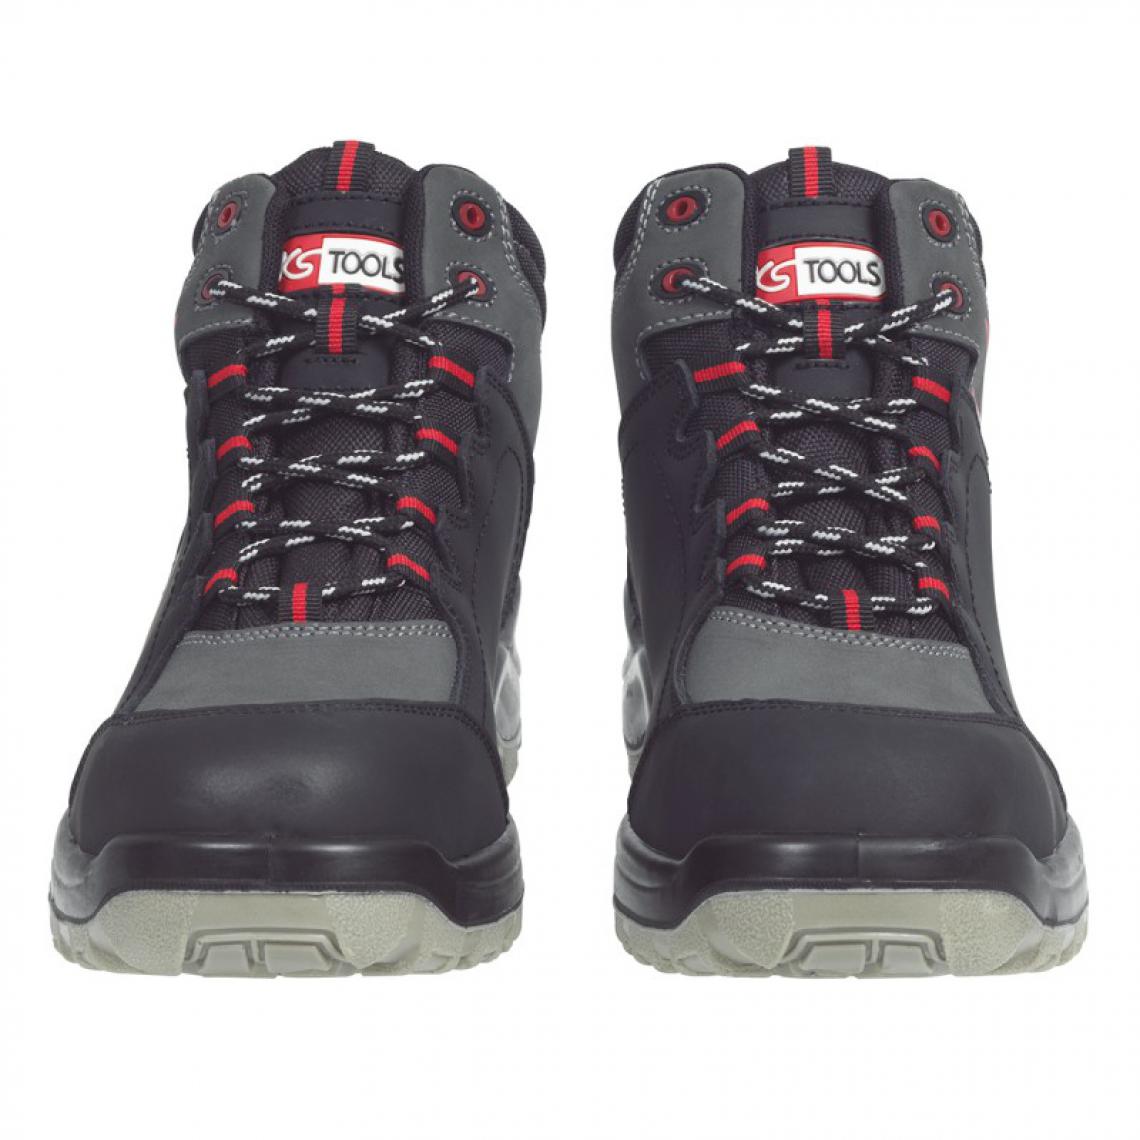 Kstools - Chaussures de sécurité montante KSTOOLS Couleur grise et noire taille 45 - Equipement de Protection Individuelle